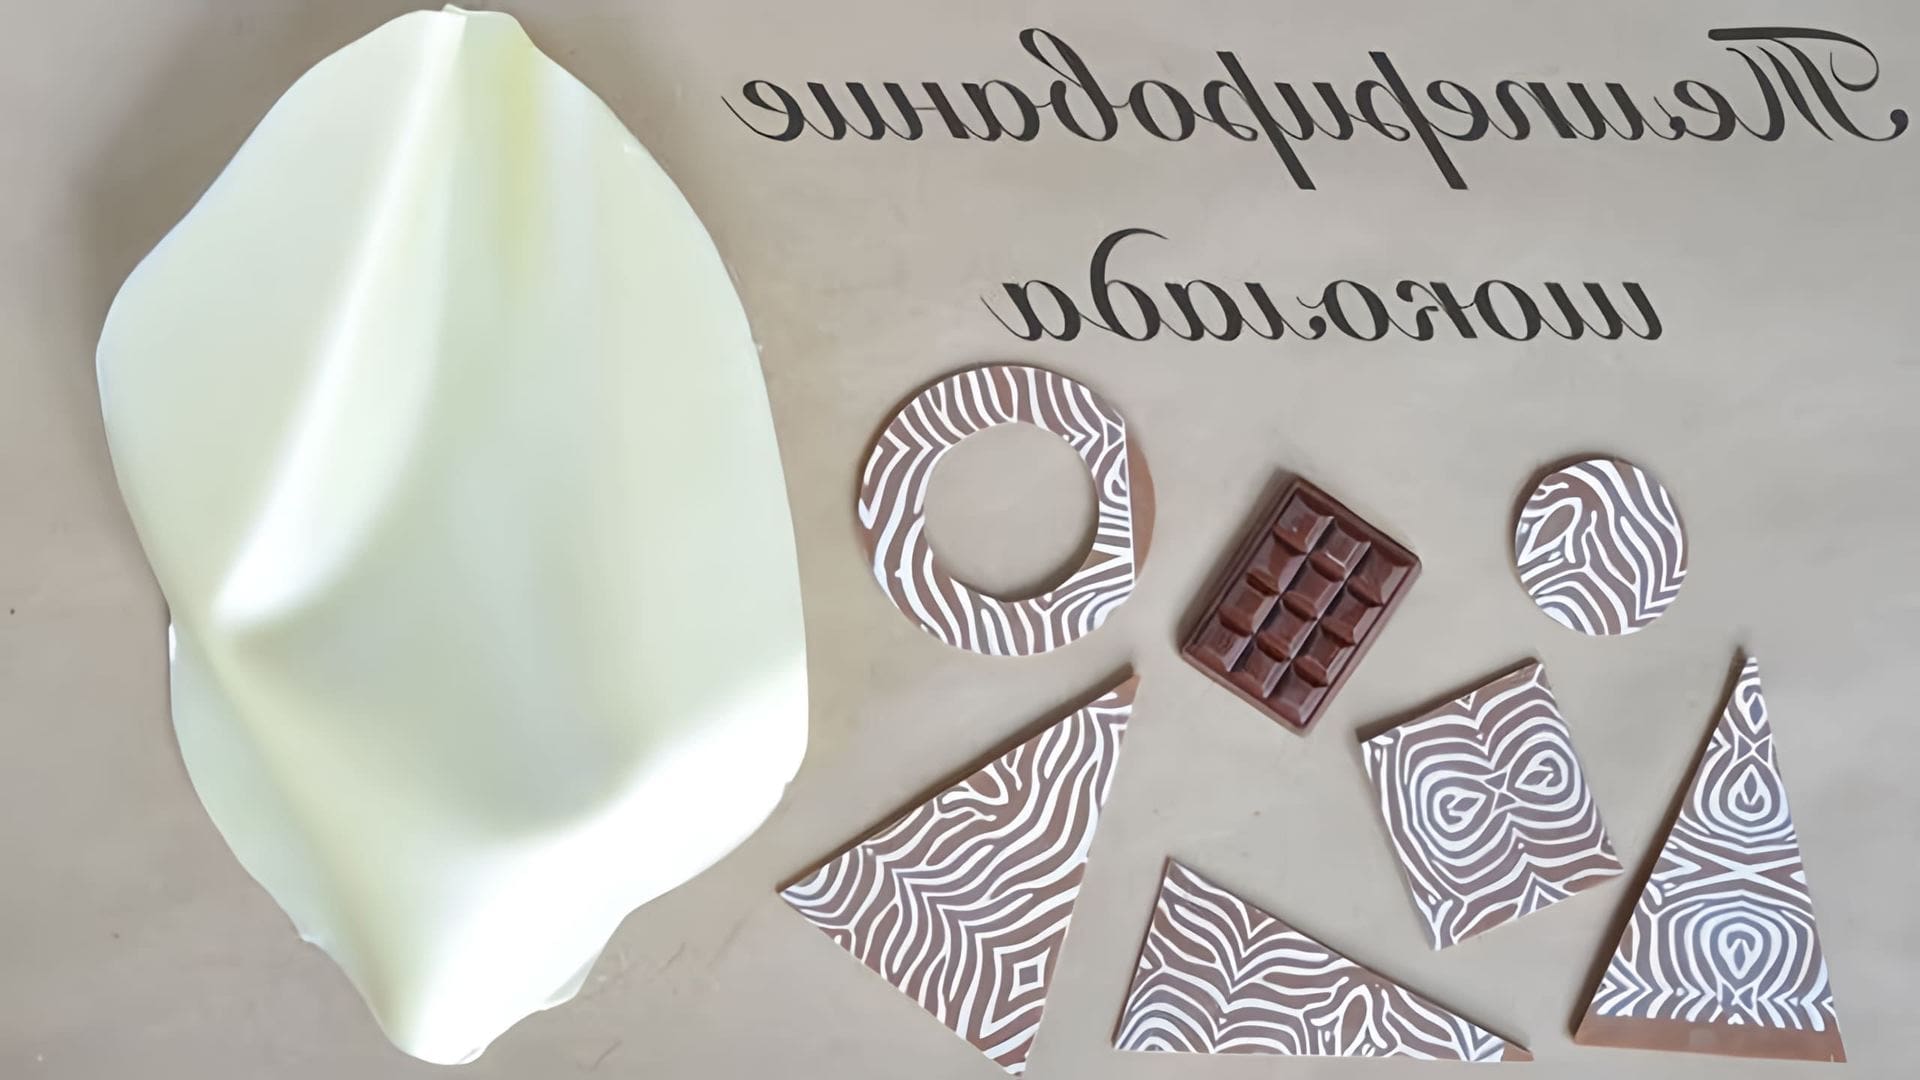 В этом видео автор показывает два способа темперирования шоколада в домашних условиях